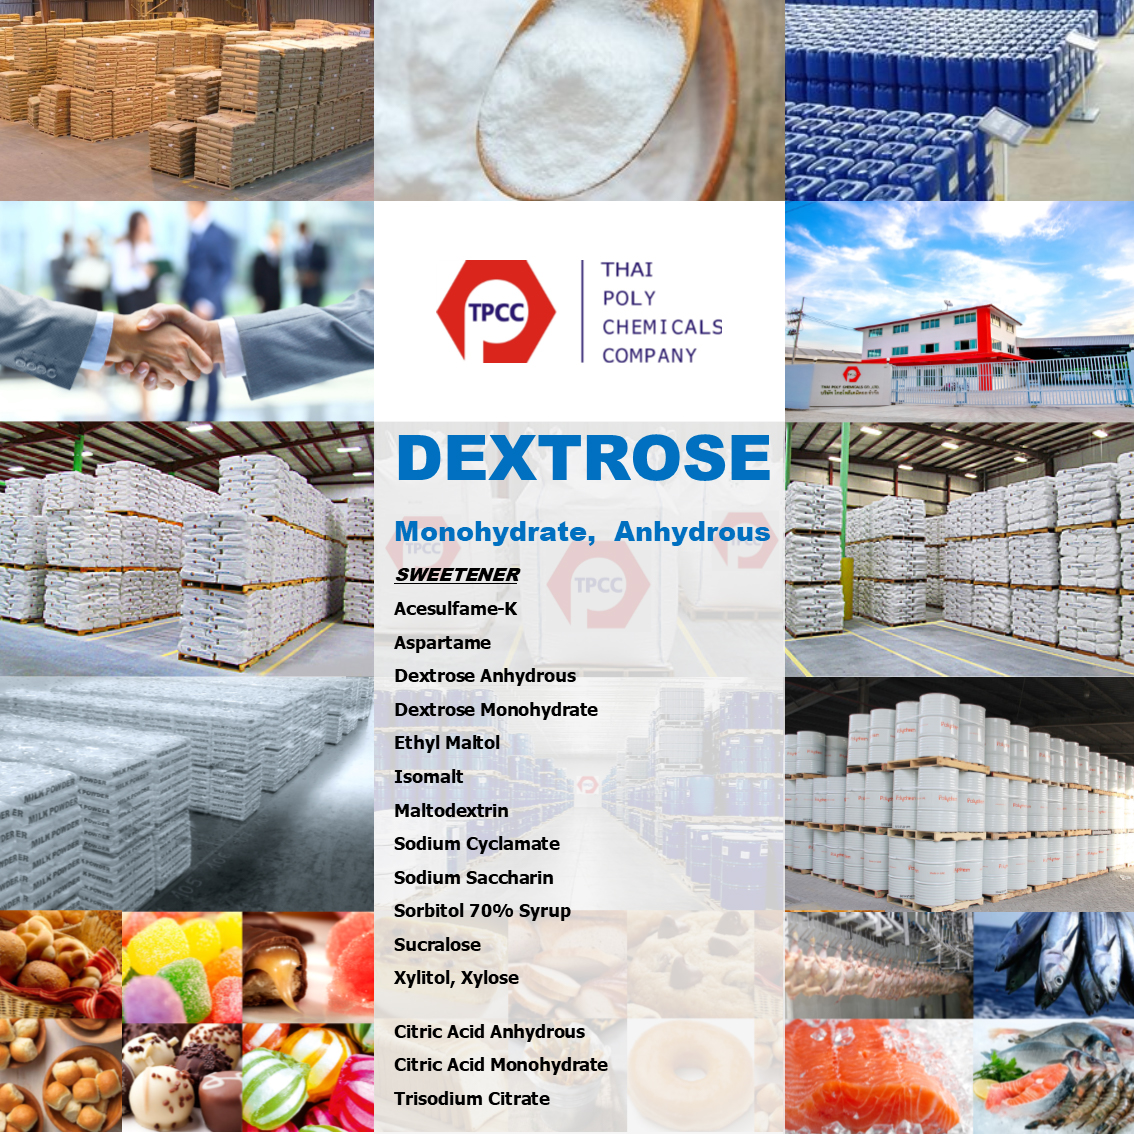 เด็กซ์โตรส, Dextrose, เด็กซ์โตรสโมโนไฮเดรต, Dextrose monohydrate, เด็กซ์โตรสแอนไฮดรัส, Dextrose anhydrous, น้ำตาลเย็น, สวีทเทนเนอร์, Sweetener รูปที่ 1